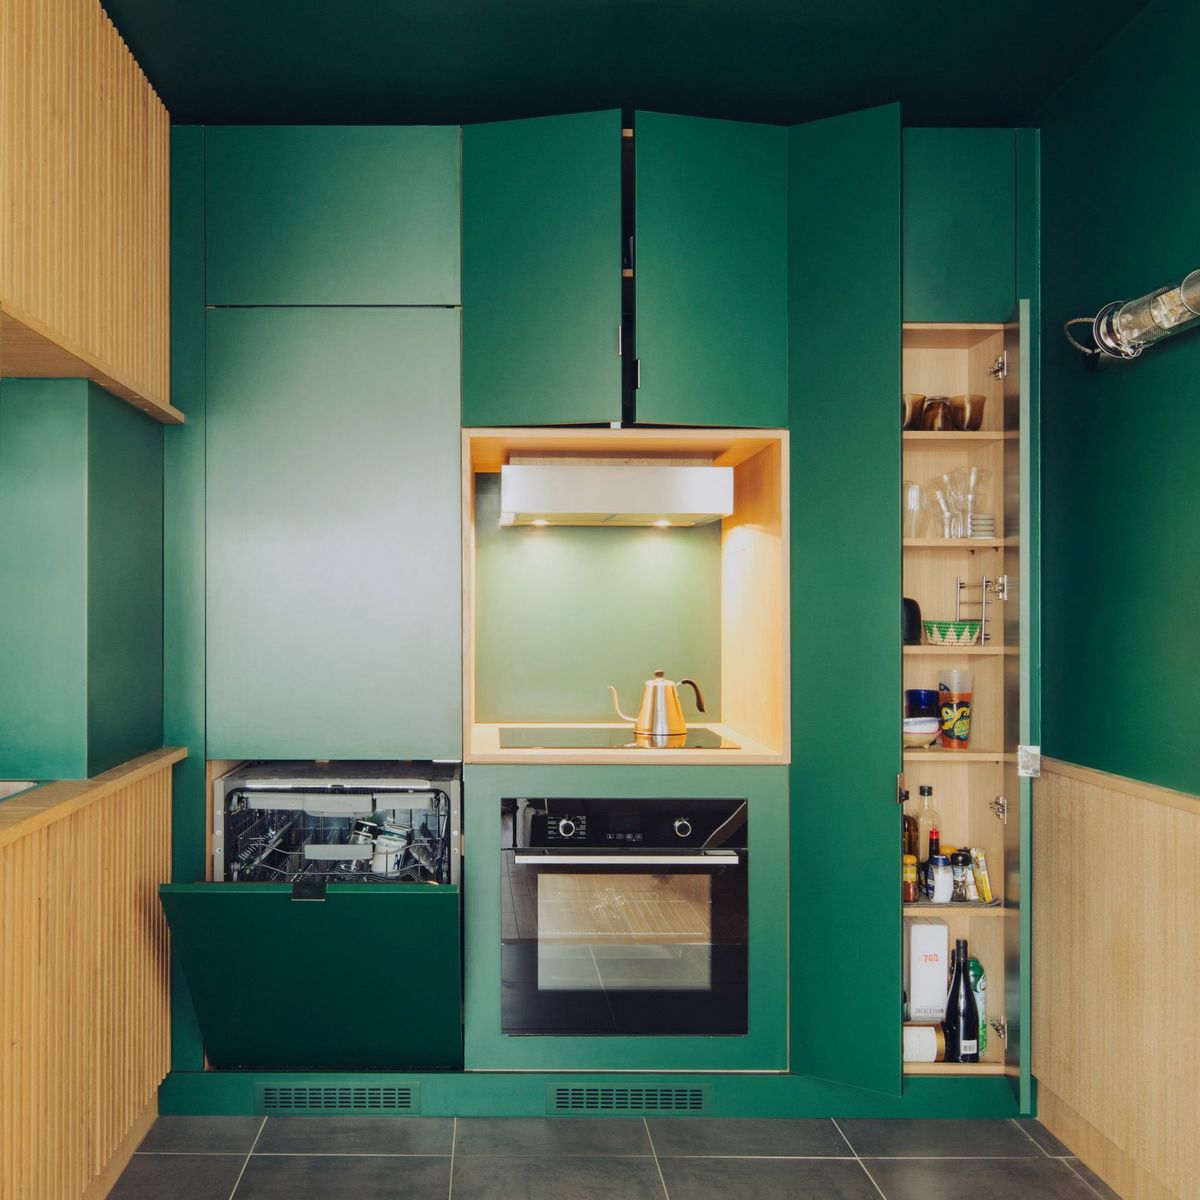 Кухни Верхние темно зеленые   шкафы со стеклом